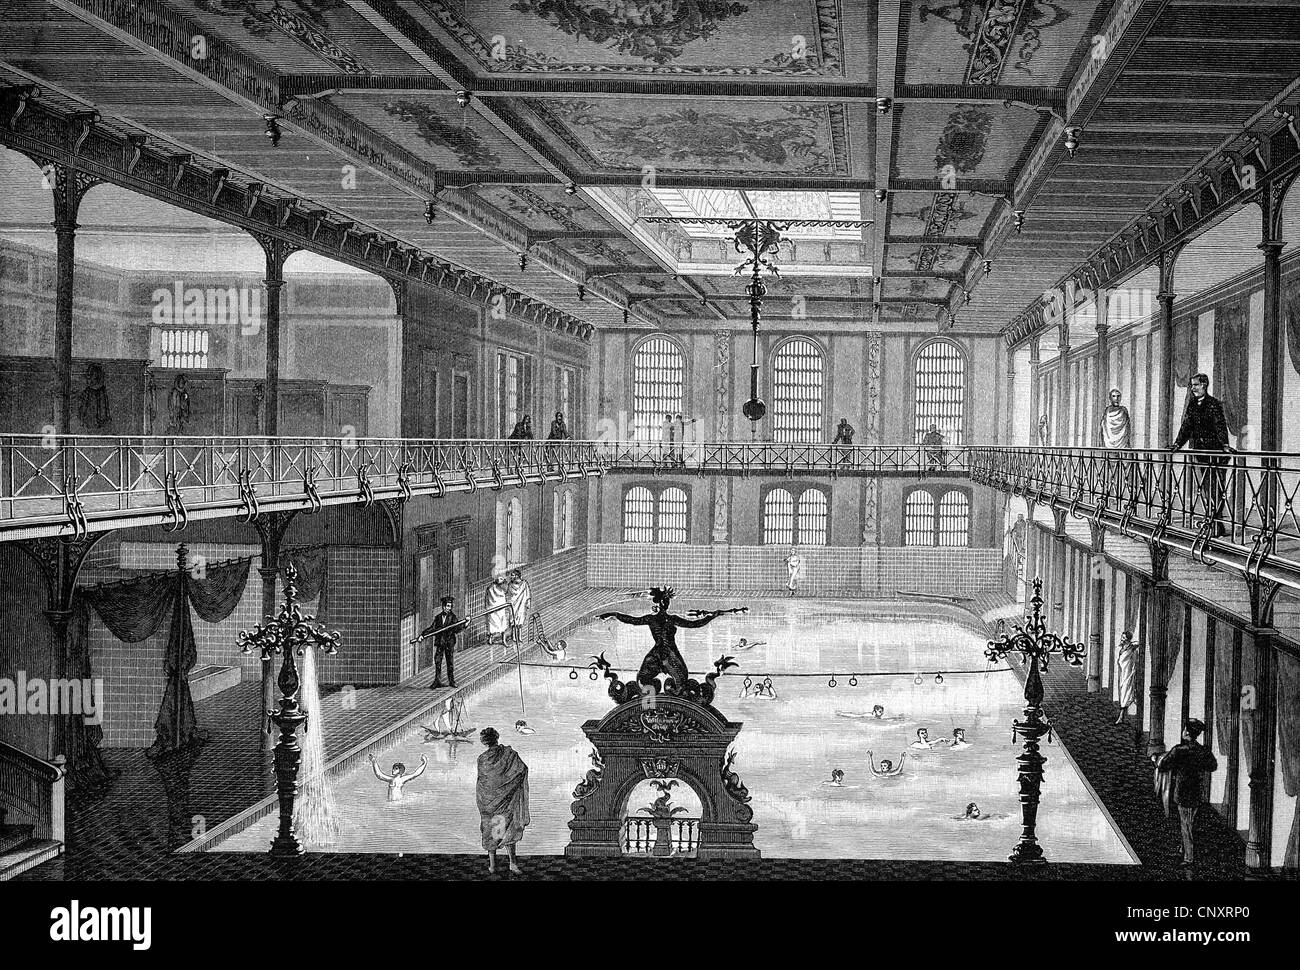 La nouvelle piscine couverte à Stuttgart, Allemagne, vers 1888, gravure historique Banque D'Images